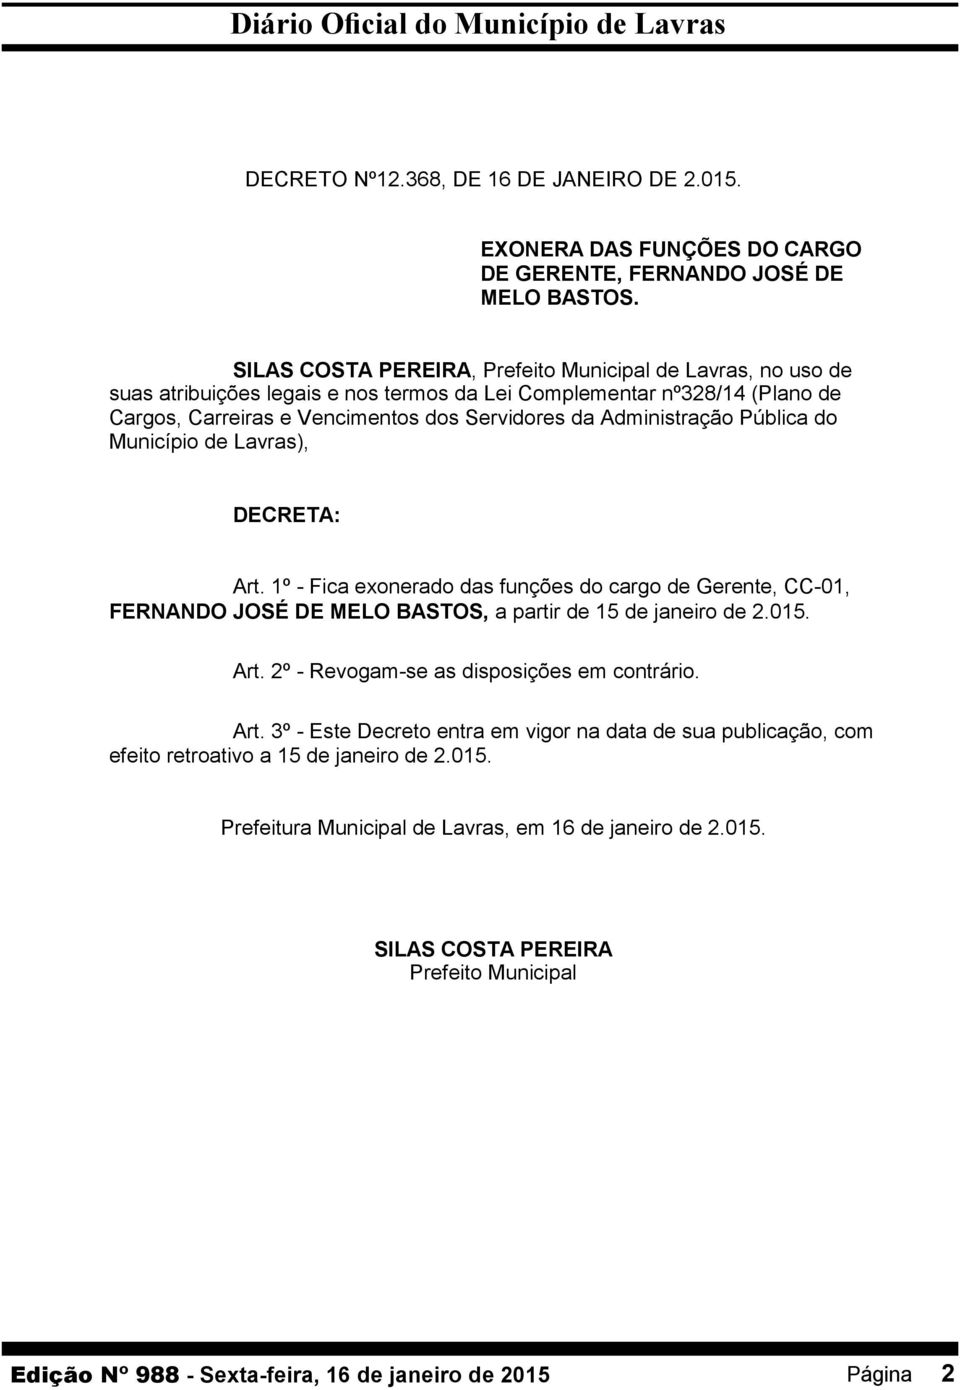 Administração Pública do Município de Lavras), DECRETA: Art. 1º - Fica exonerado das funções do cargo de Gerente, CC-01, FERNANDO JOSÉ DE MELO BASTOS, a partir de 15 de janeiro de 2.015.